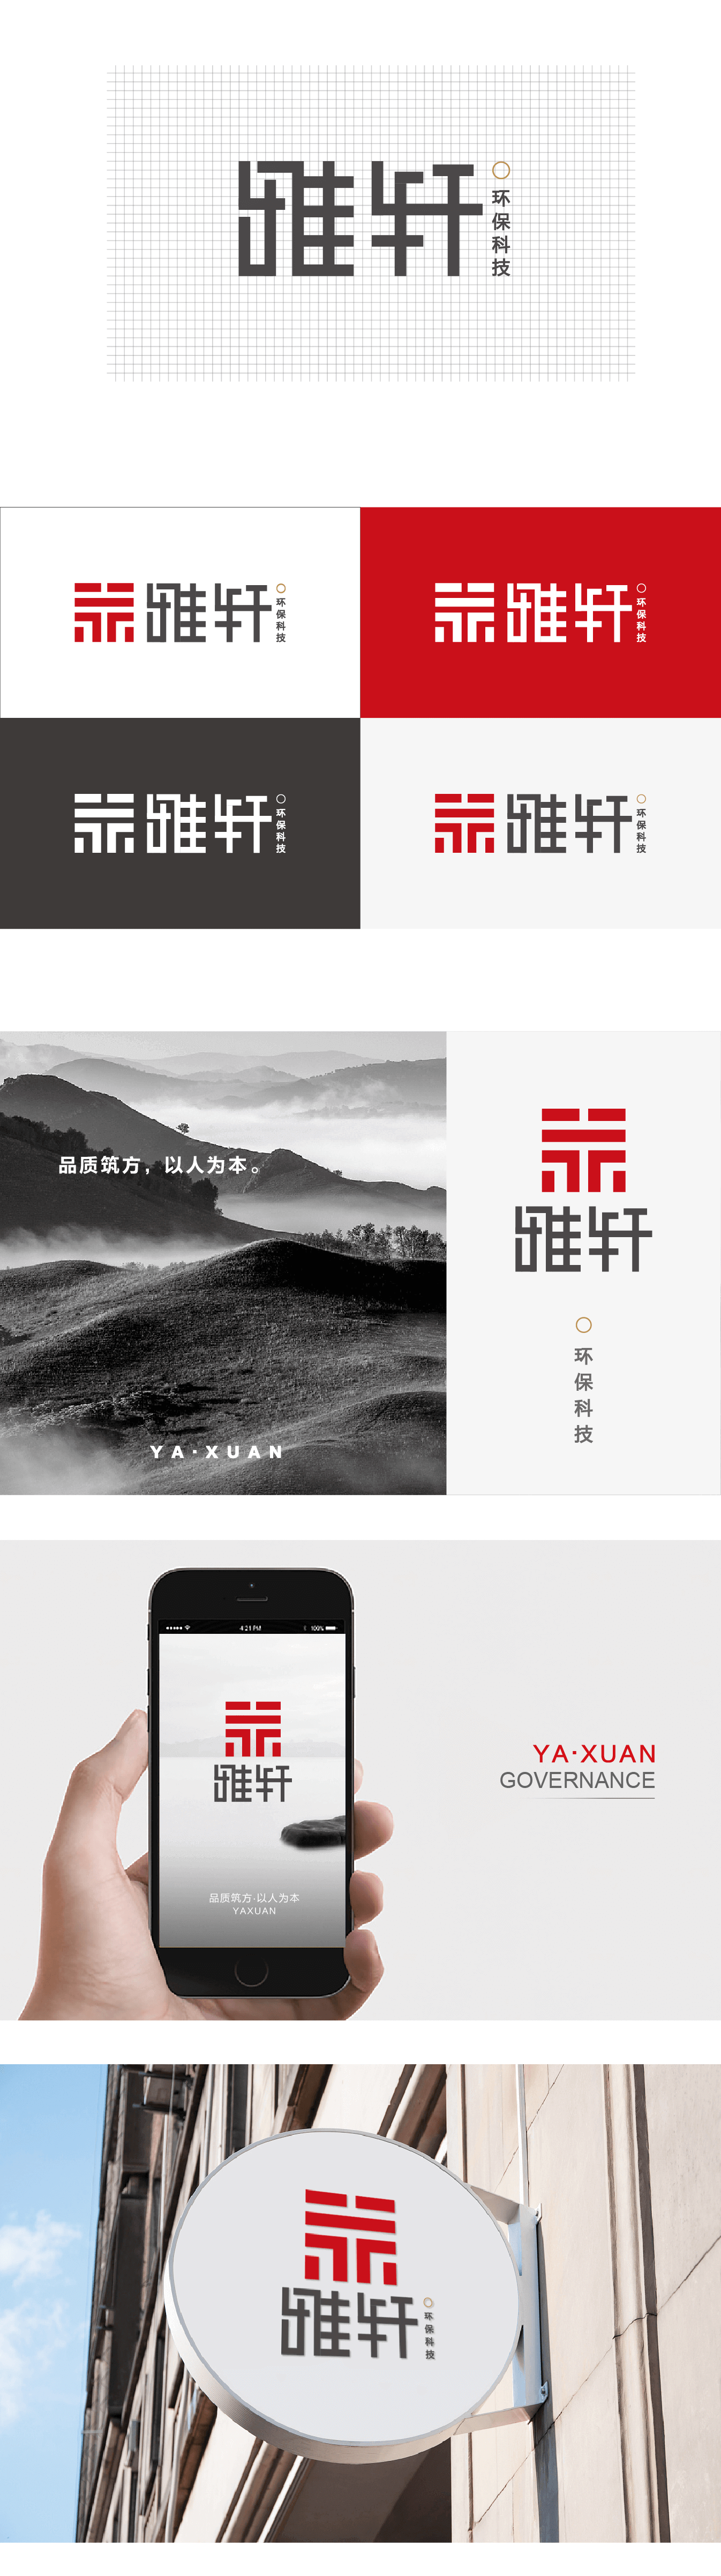 雅轩环保科技logo-20180120-02_02.png